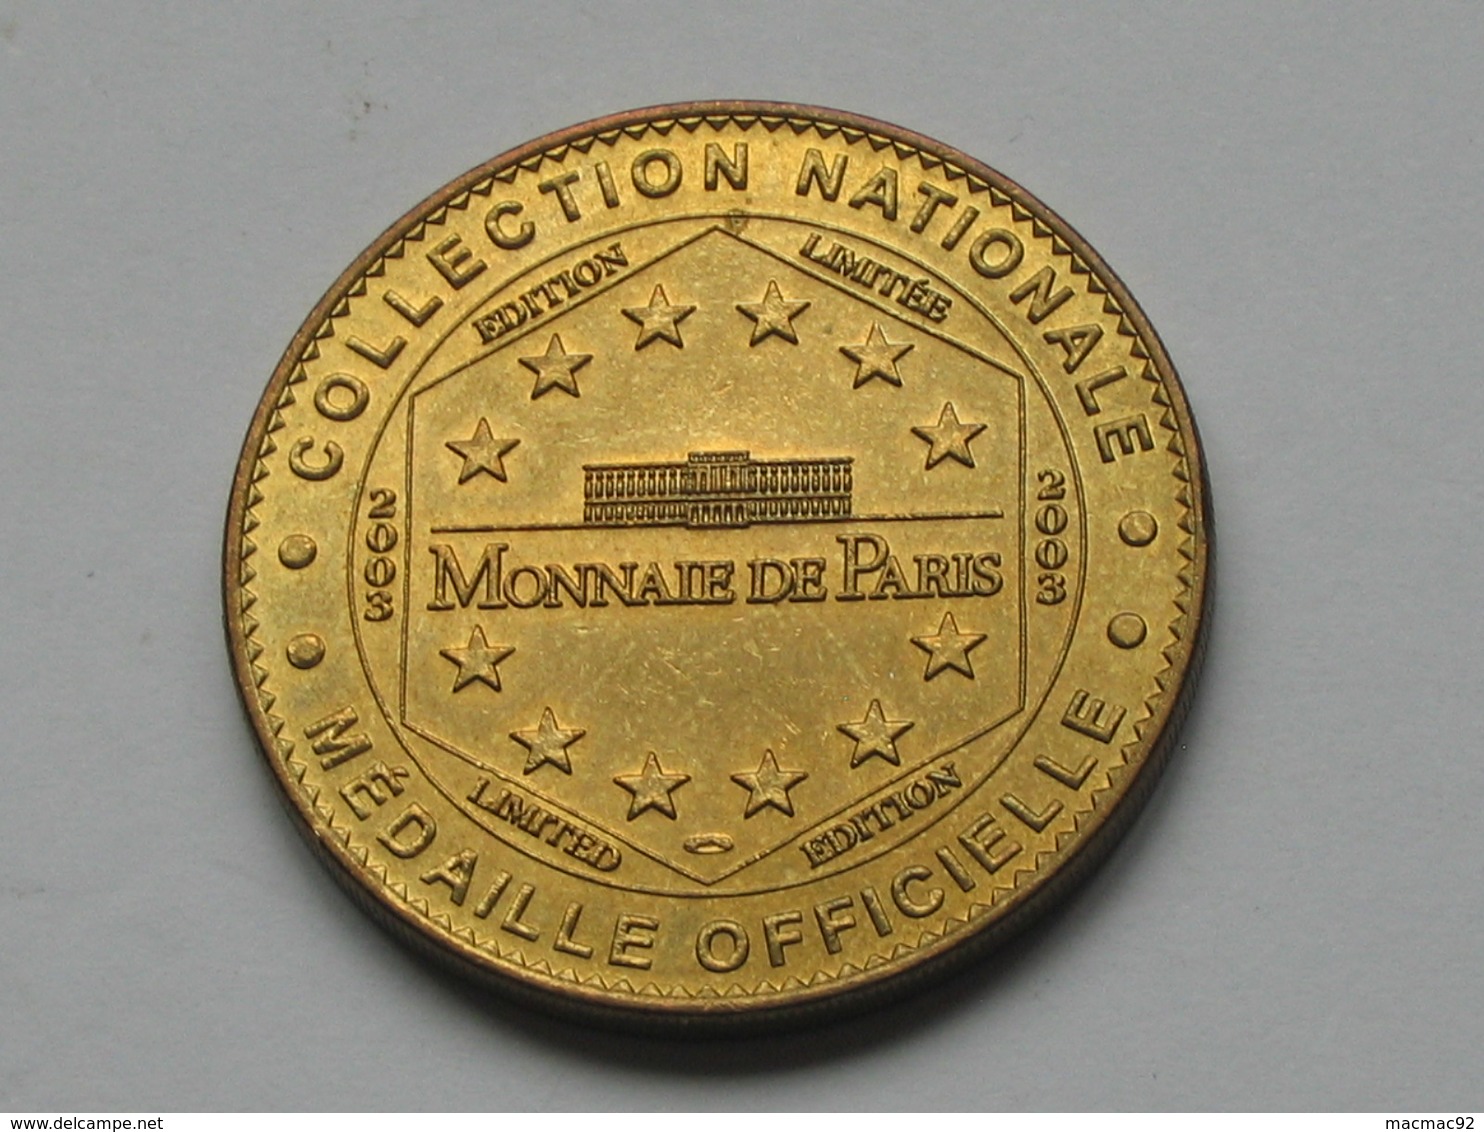 Monnaie De Paris 2003  - Mémorial De CAEN - Un Musée Pour La Paix   **** EN ACHAT IMMEDIAT  **** - 2003